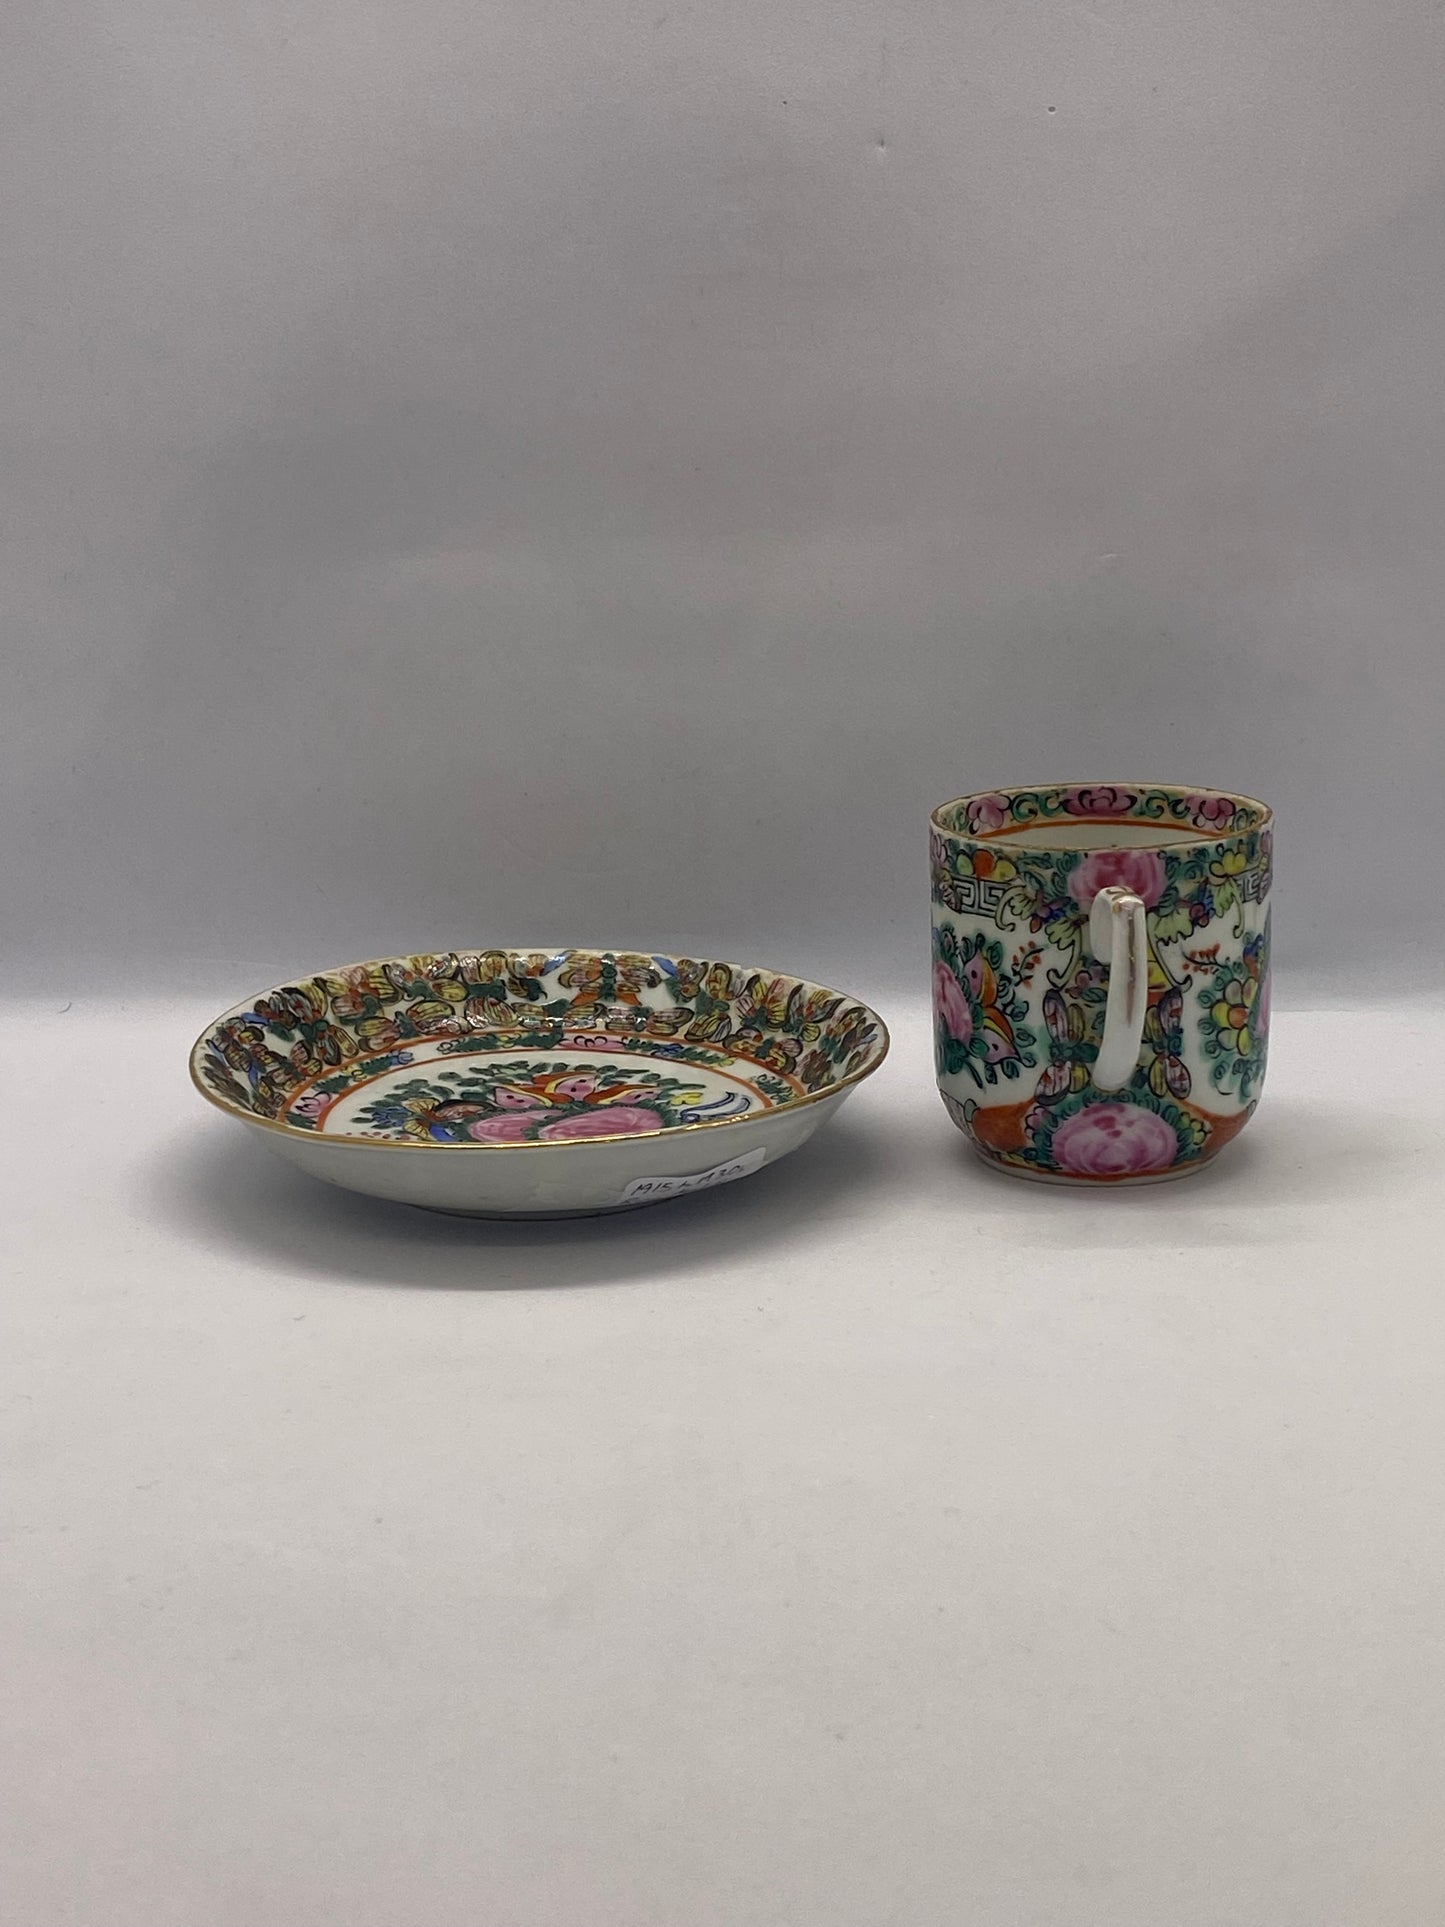 广州出口玫瑰花章茶杯碟套装 约 1915-1950 年